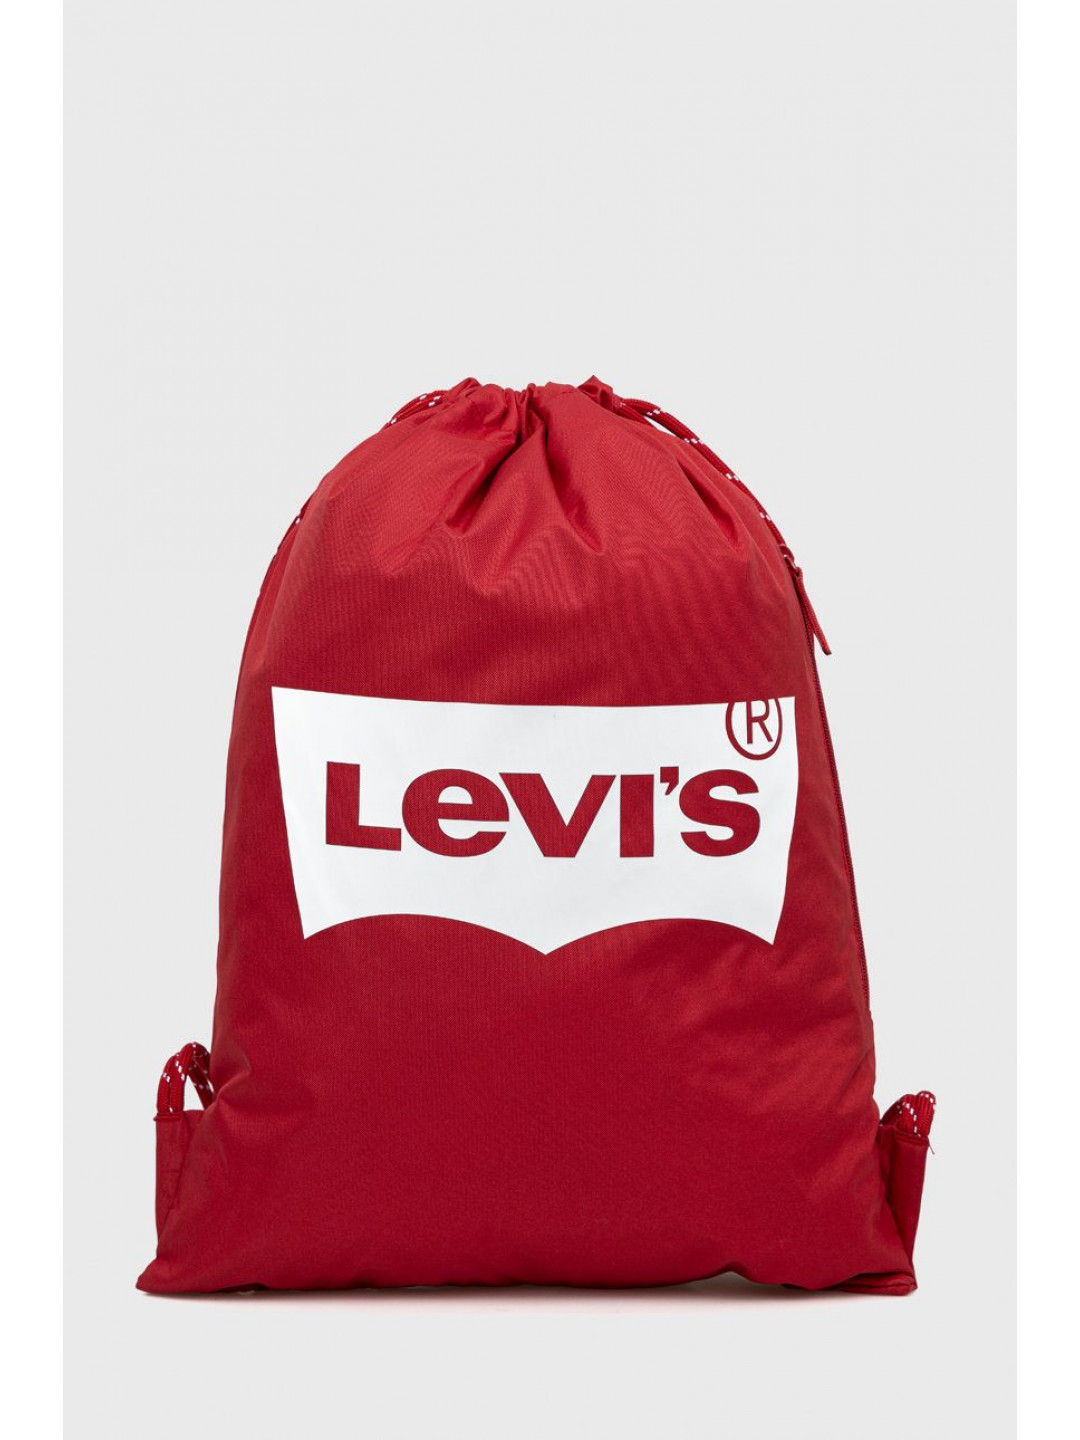 Dětský batoh Levi s červená barva s potiskem